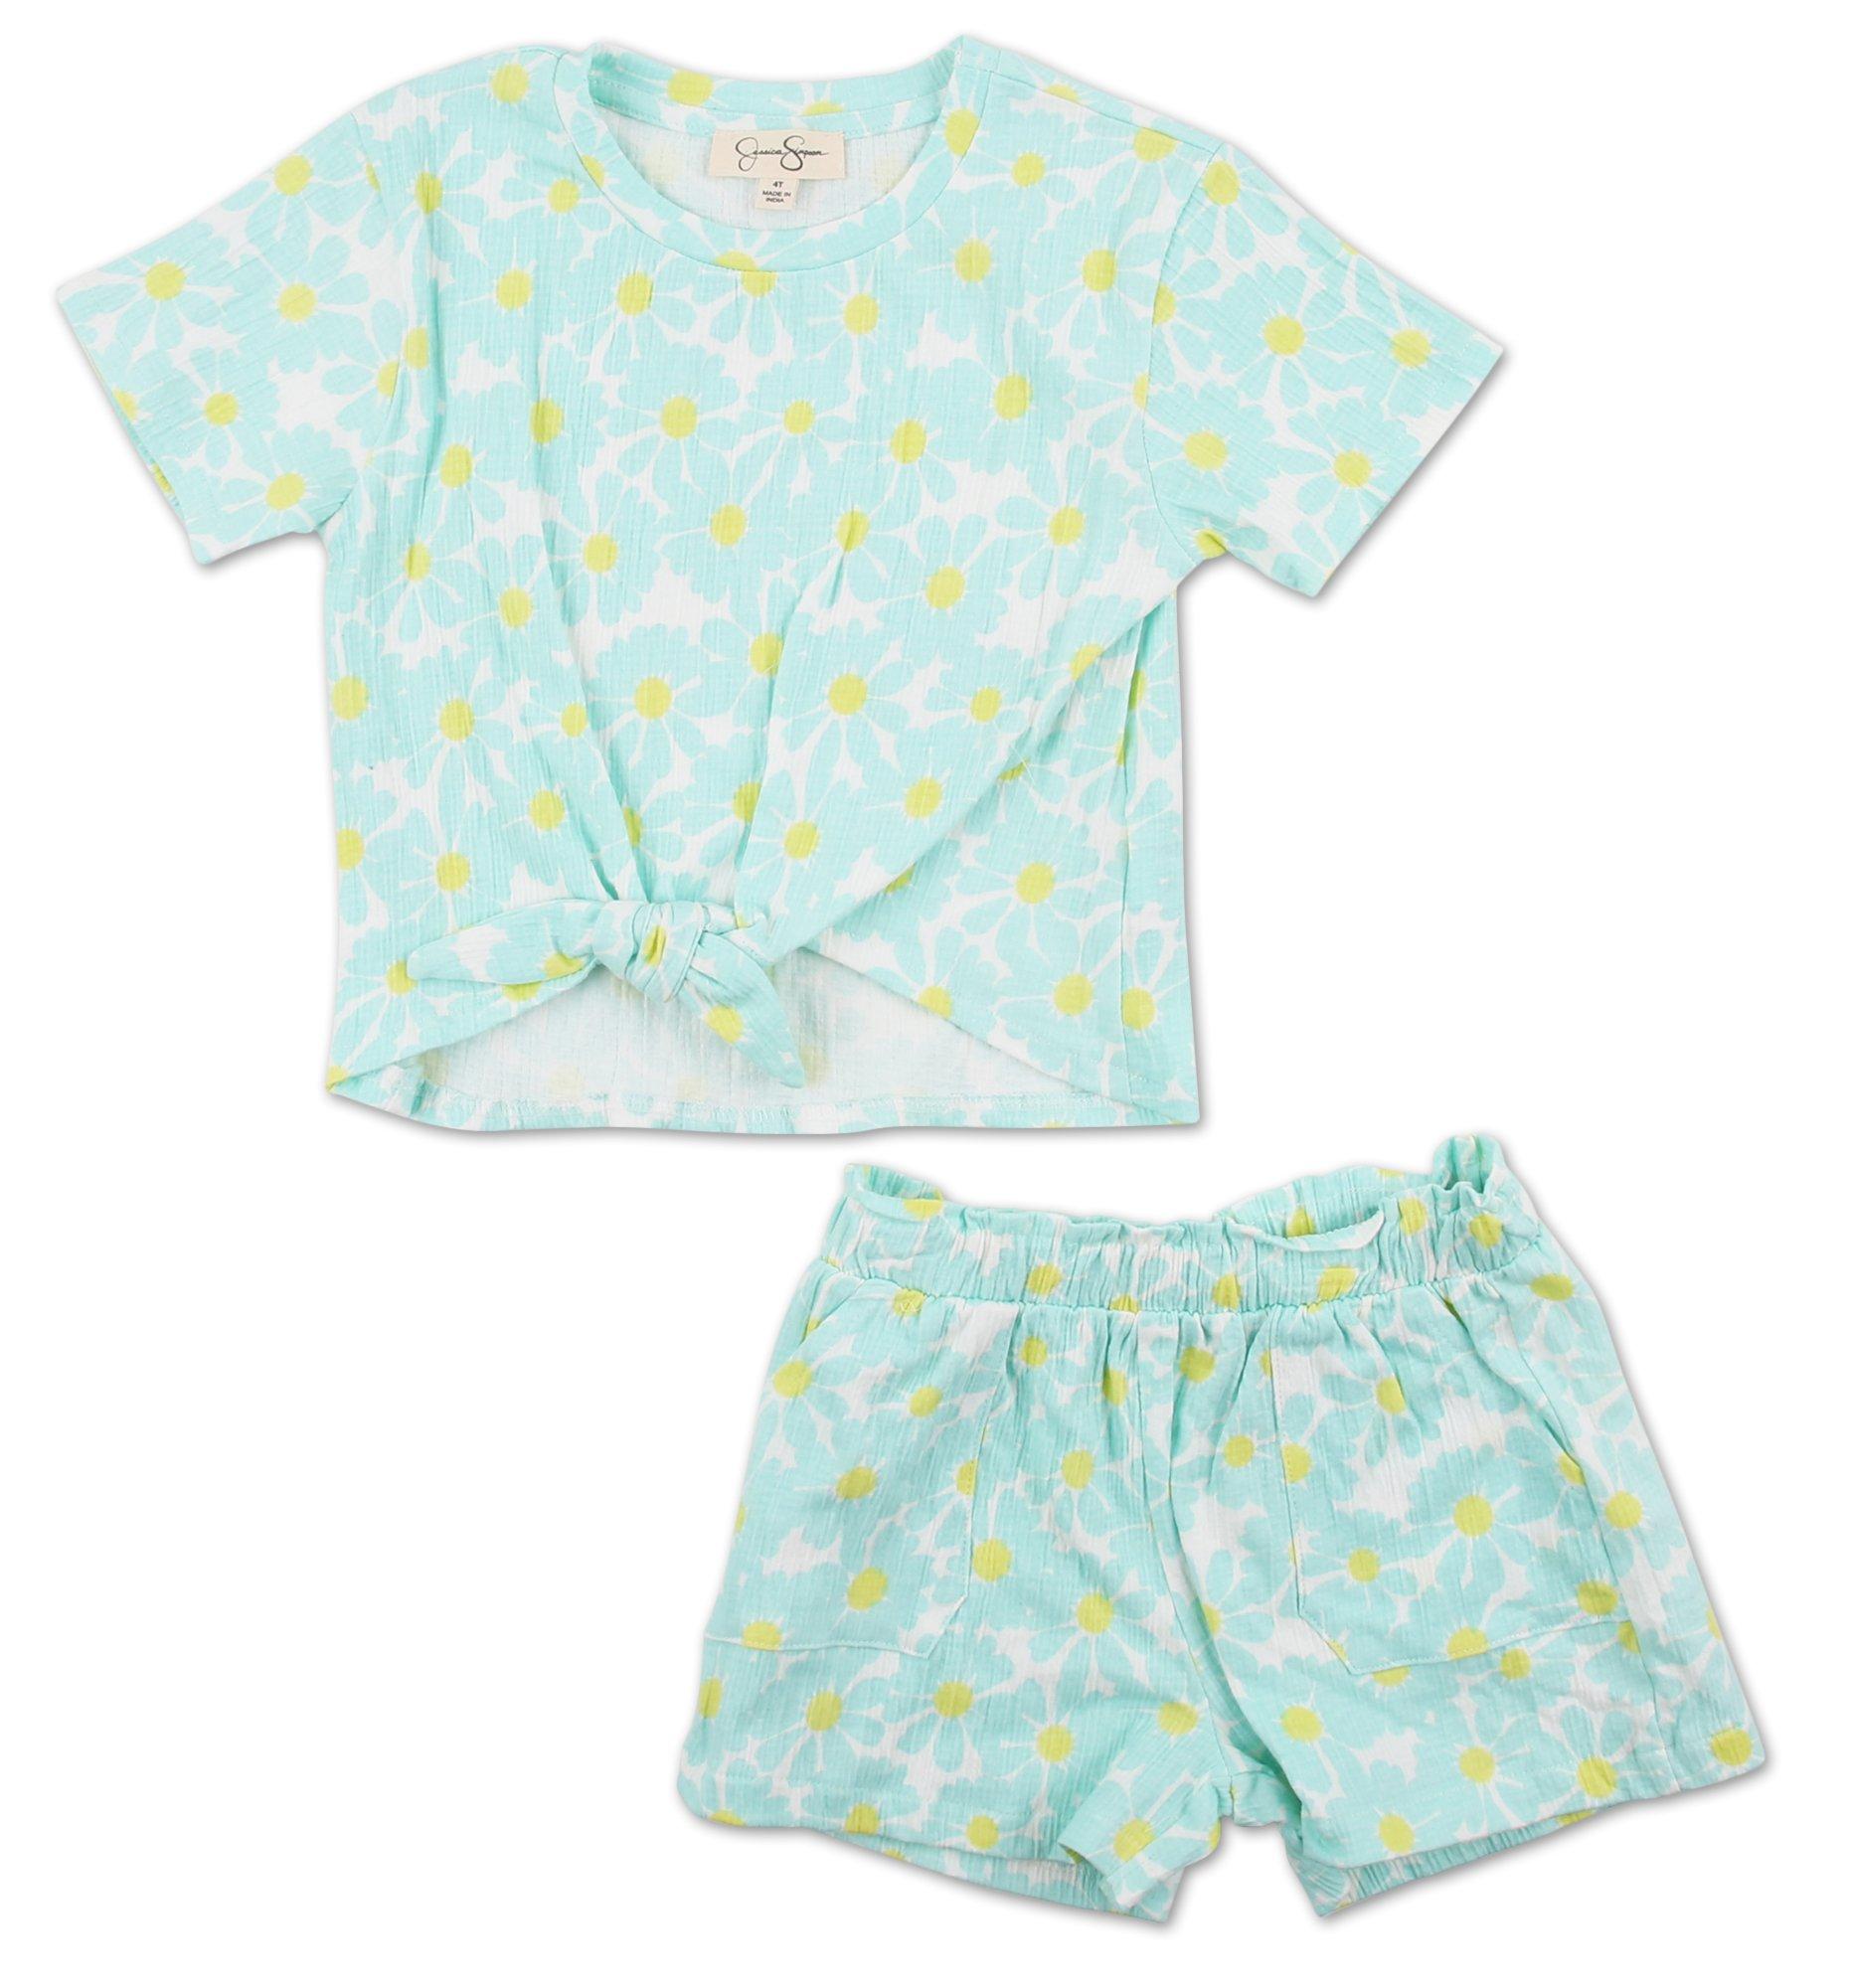 Toddler Girls 2 Pc Shorts Set